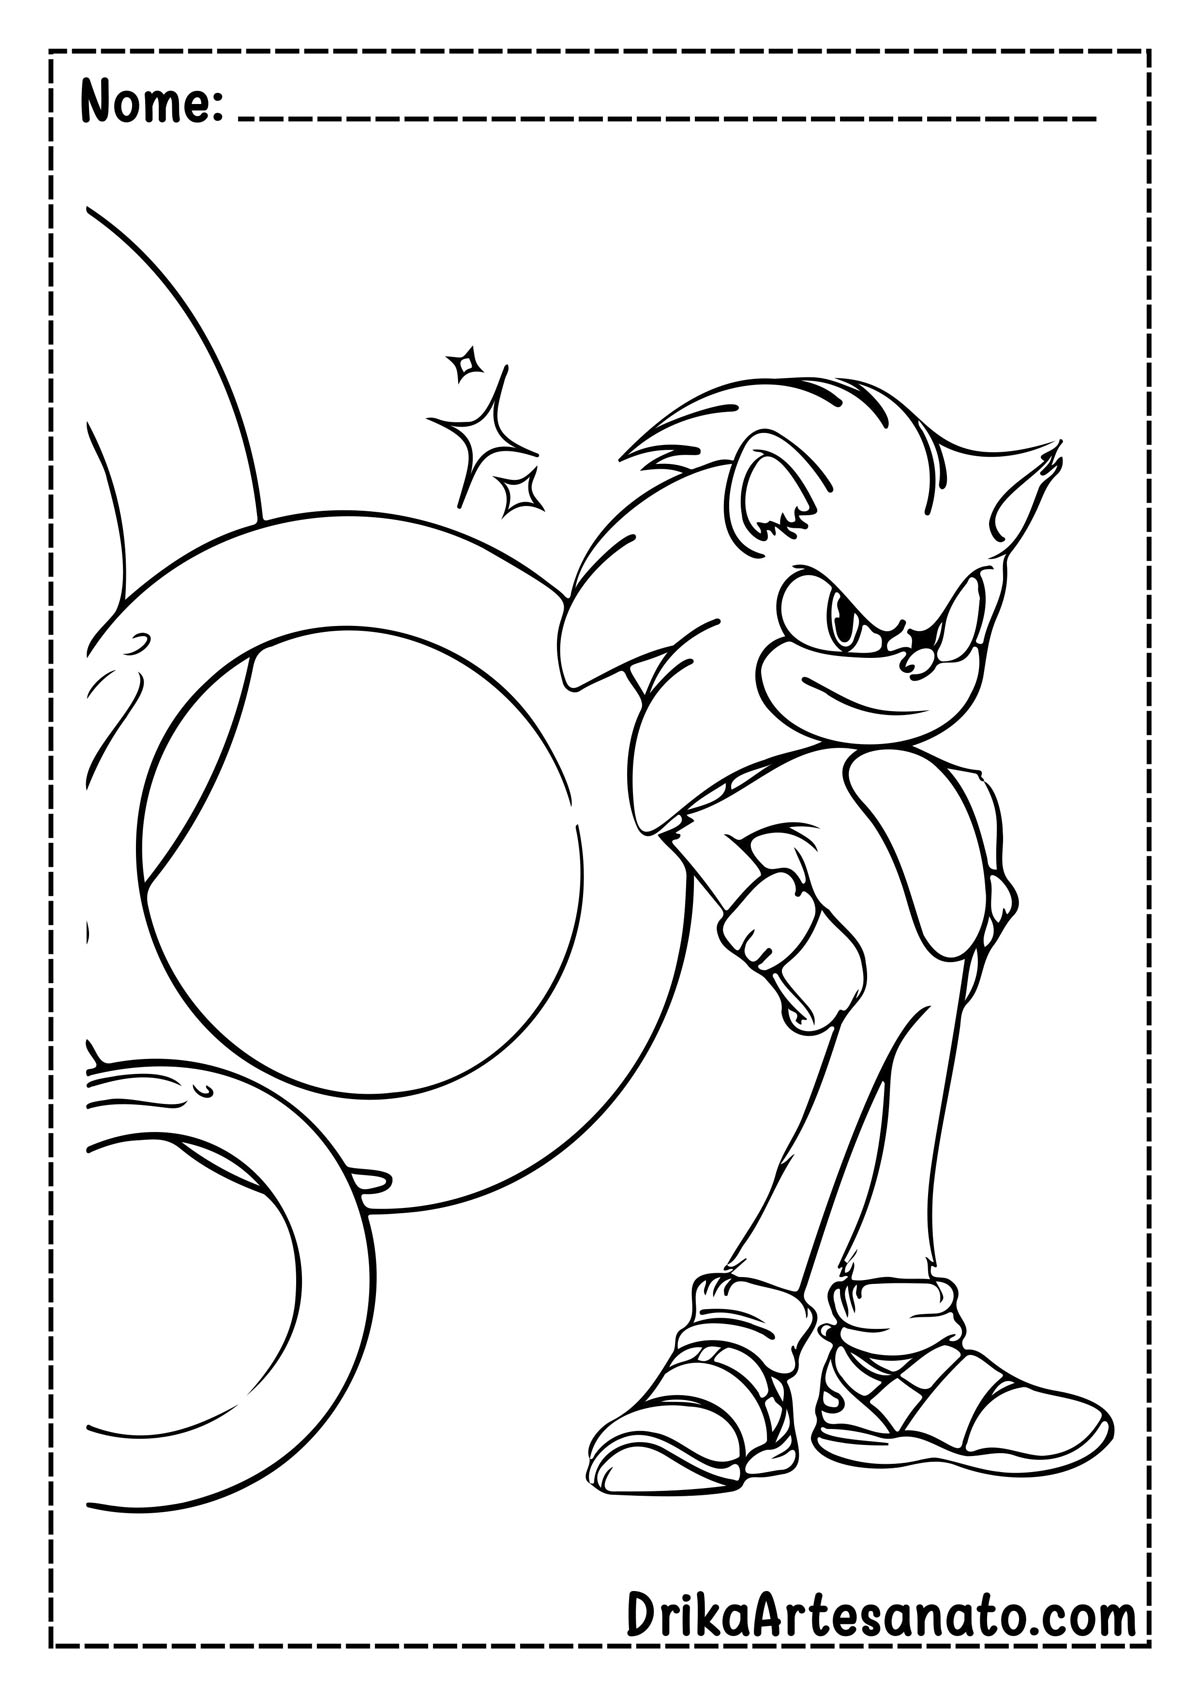 Desenho do Sonic 2 para Imprimir e Colorir